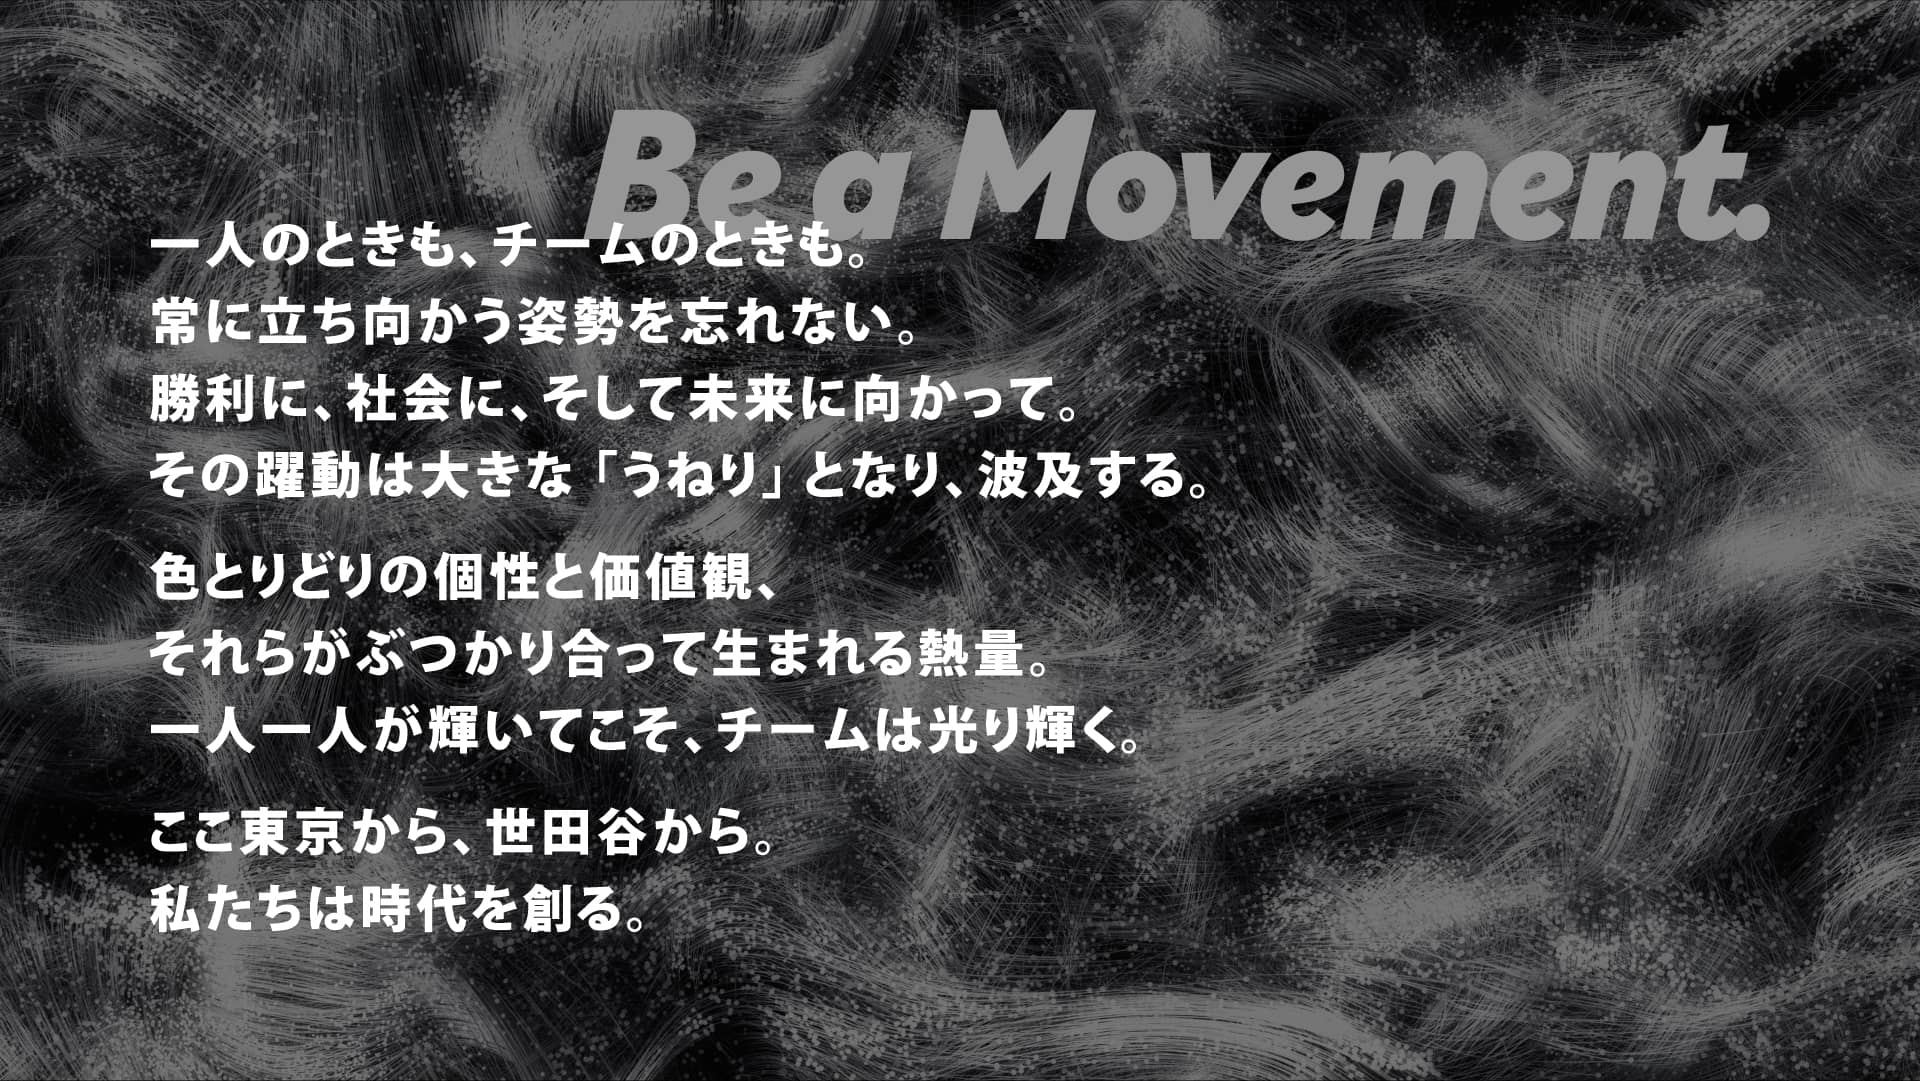 チームビジョン ”Be a Movement.”